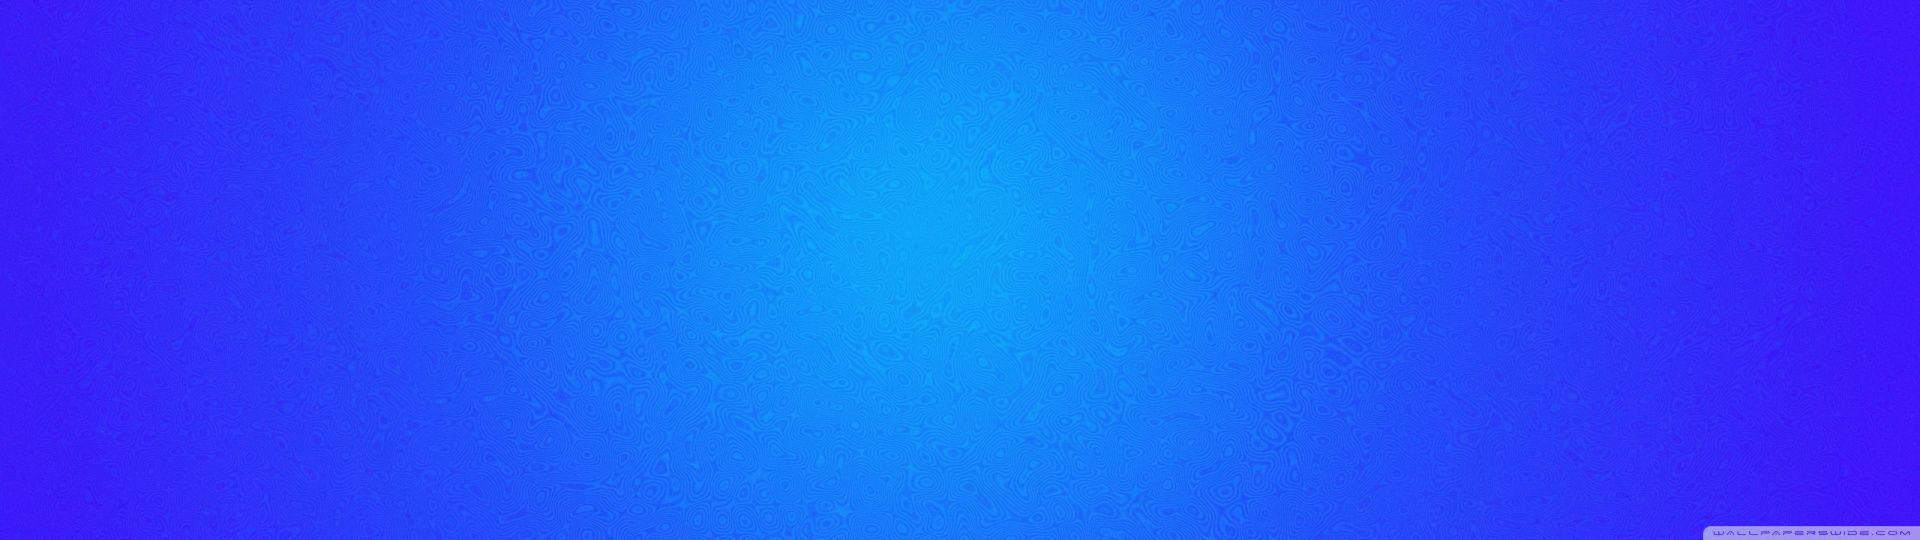 Curved Stripes on Blue Background ❤ 4K HD Desktop Wallpaper